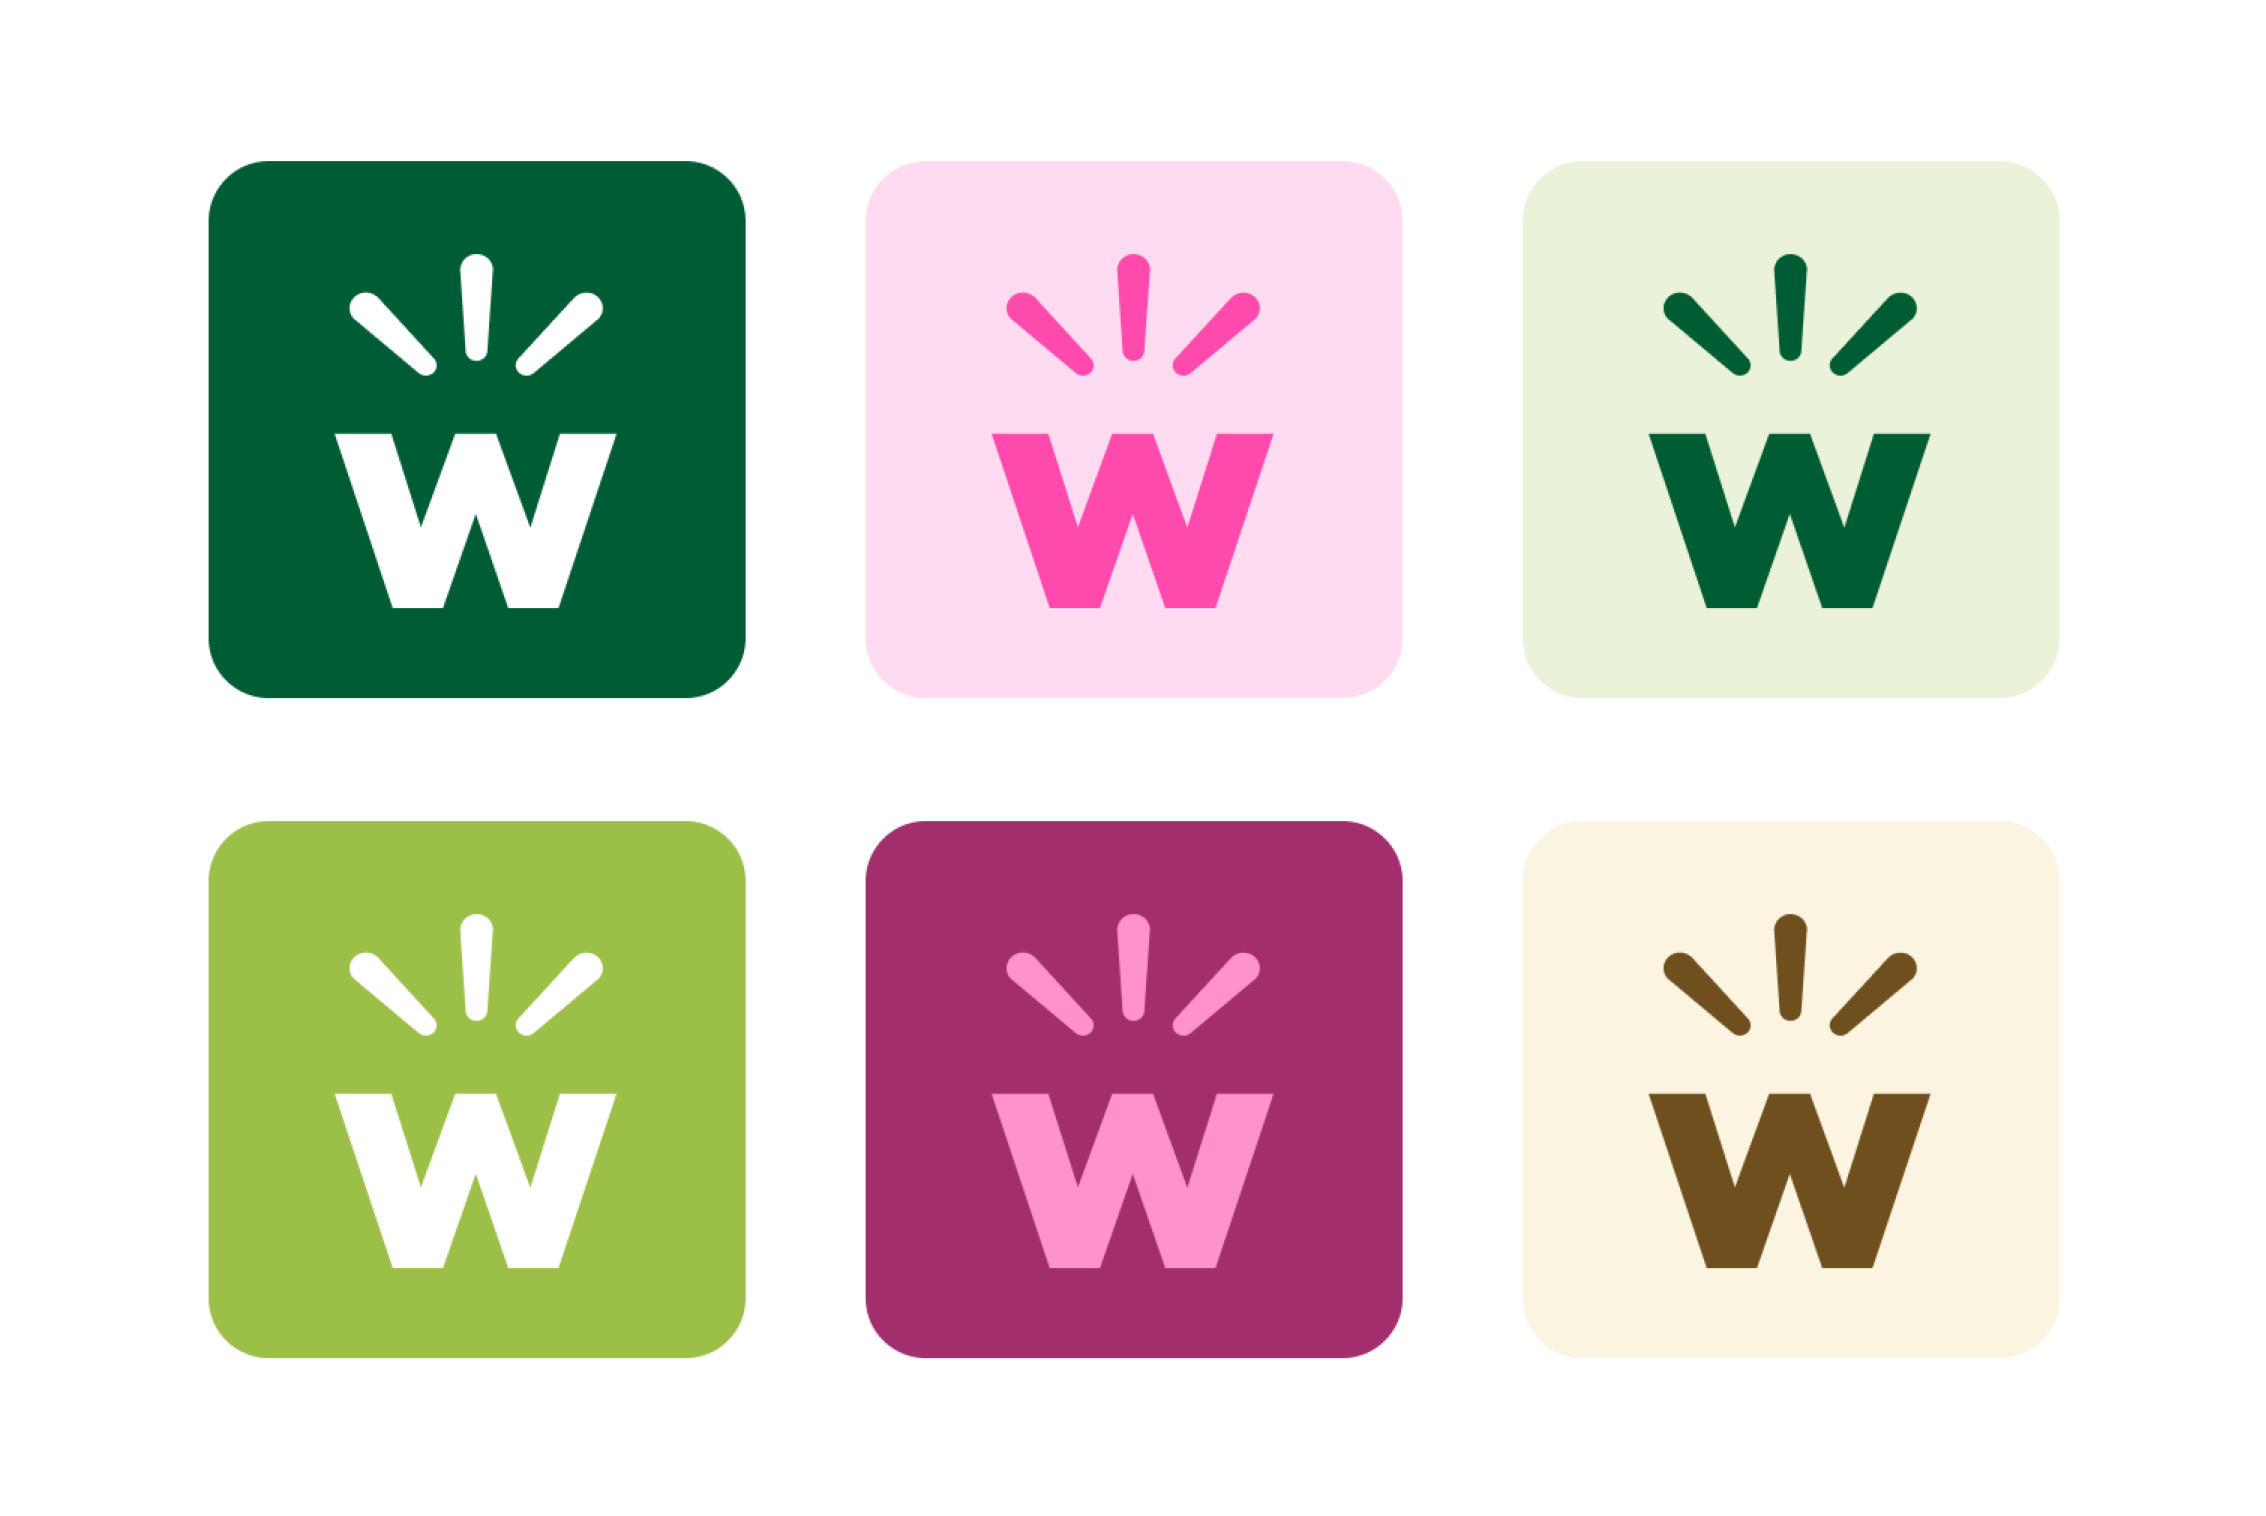 Whoppah logo image